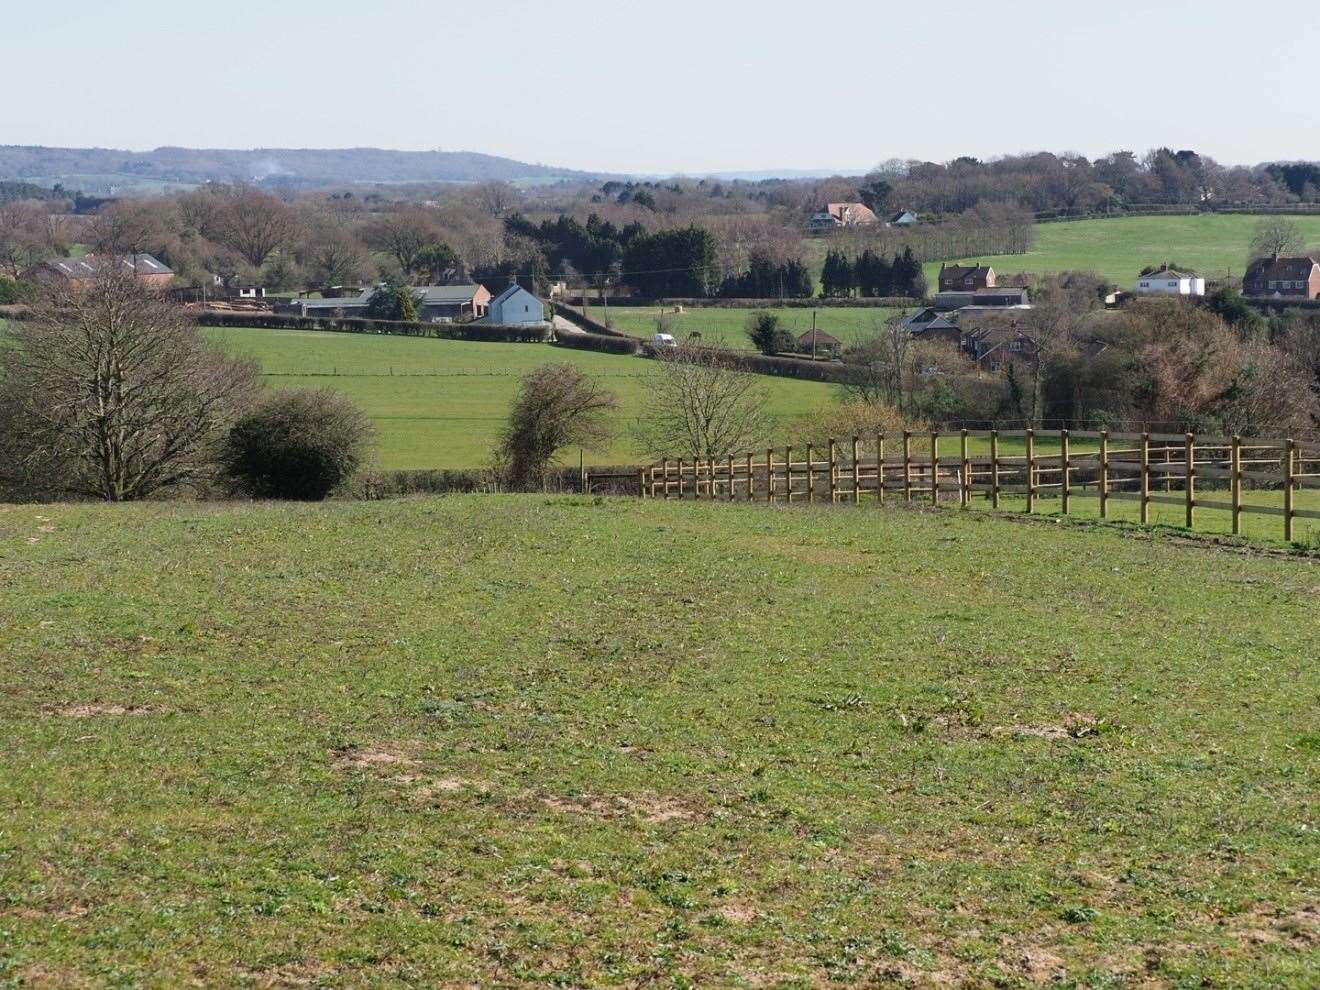 Land at Lenham Heath is set to take a garden village